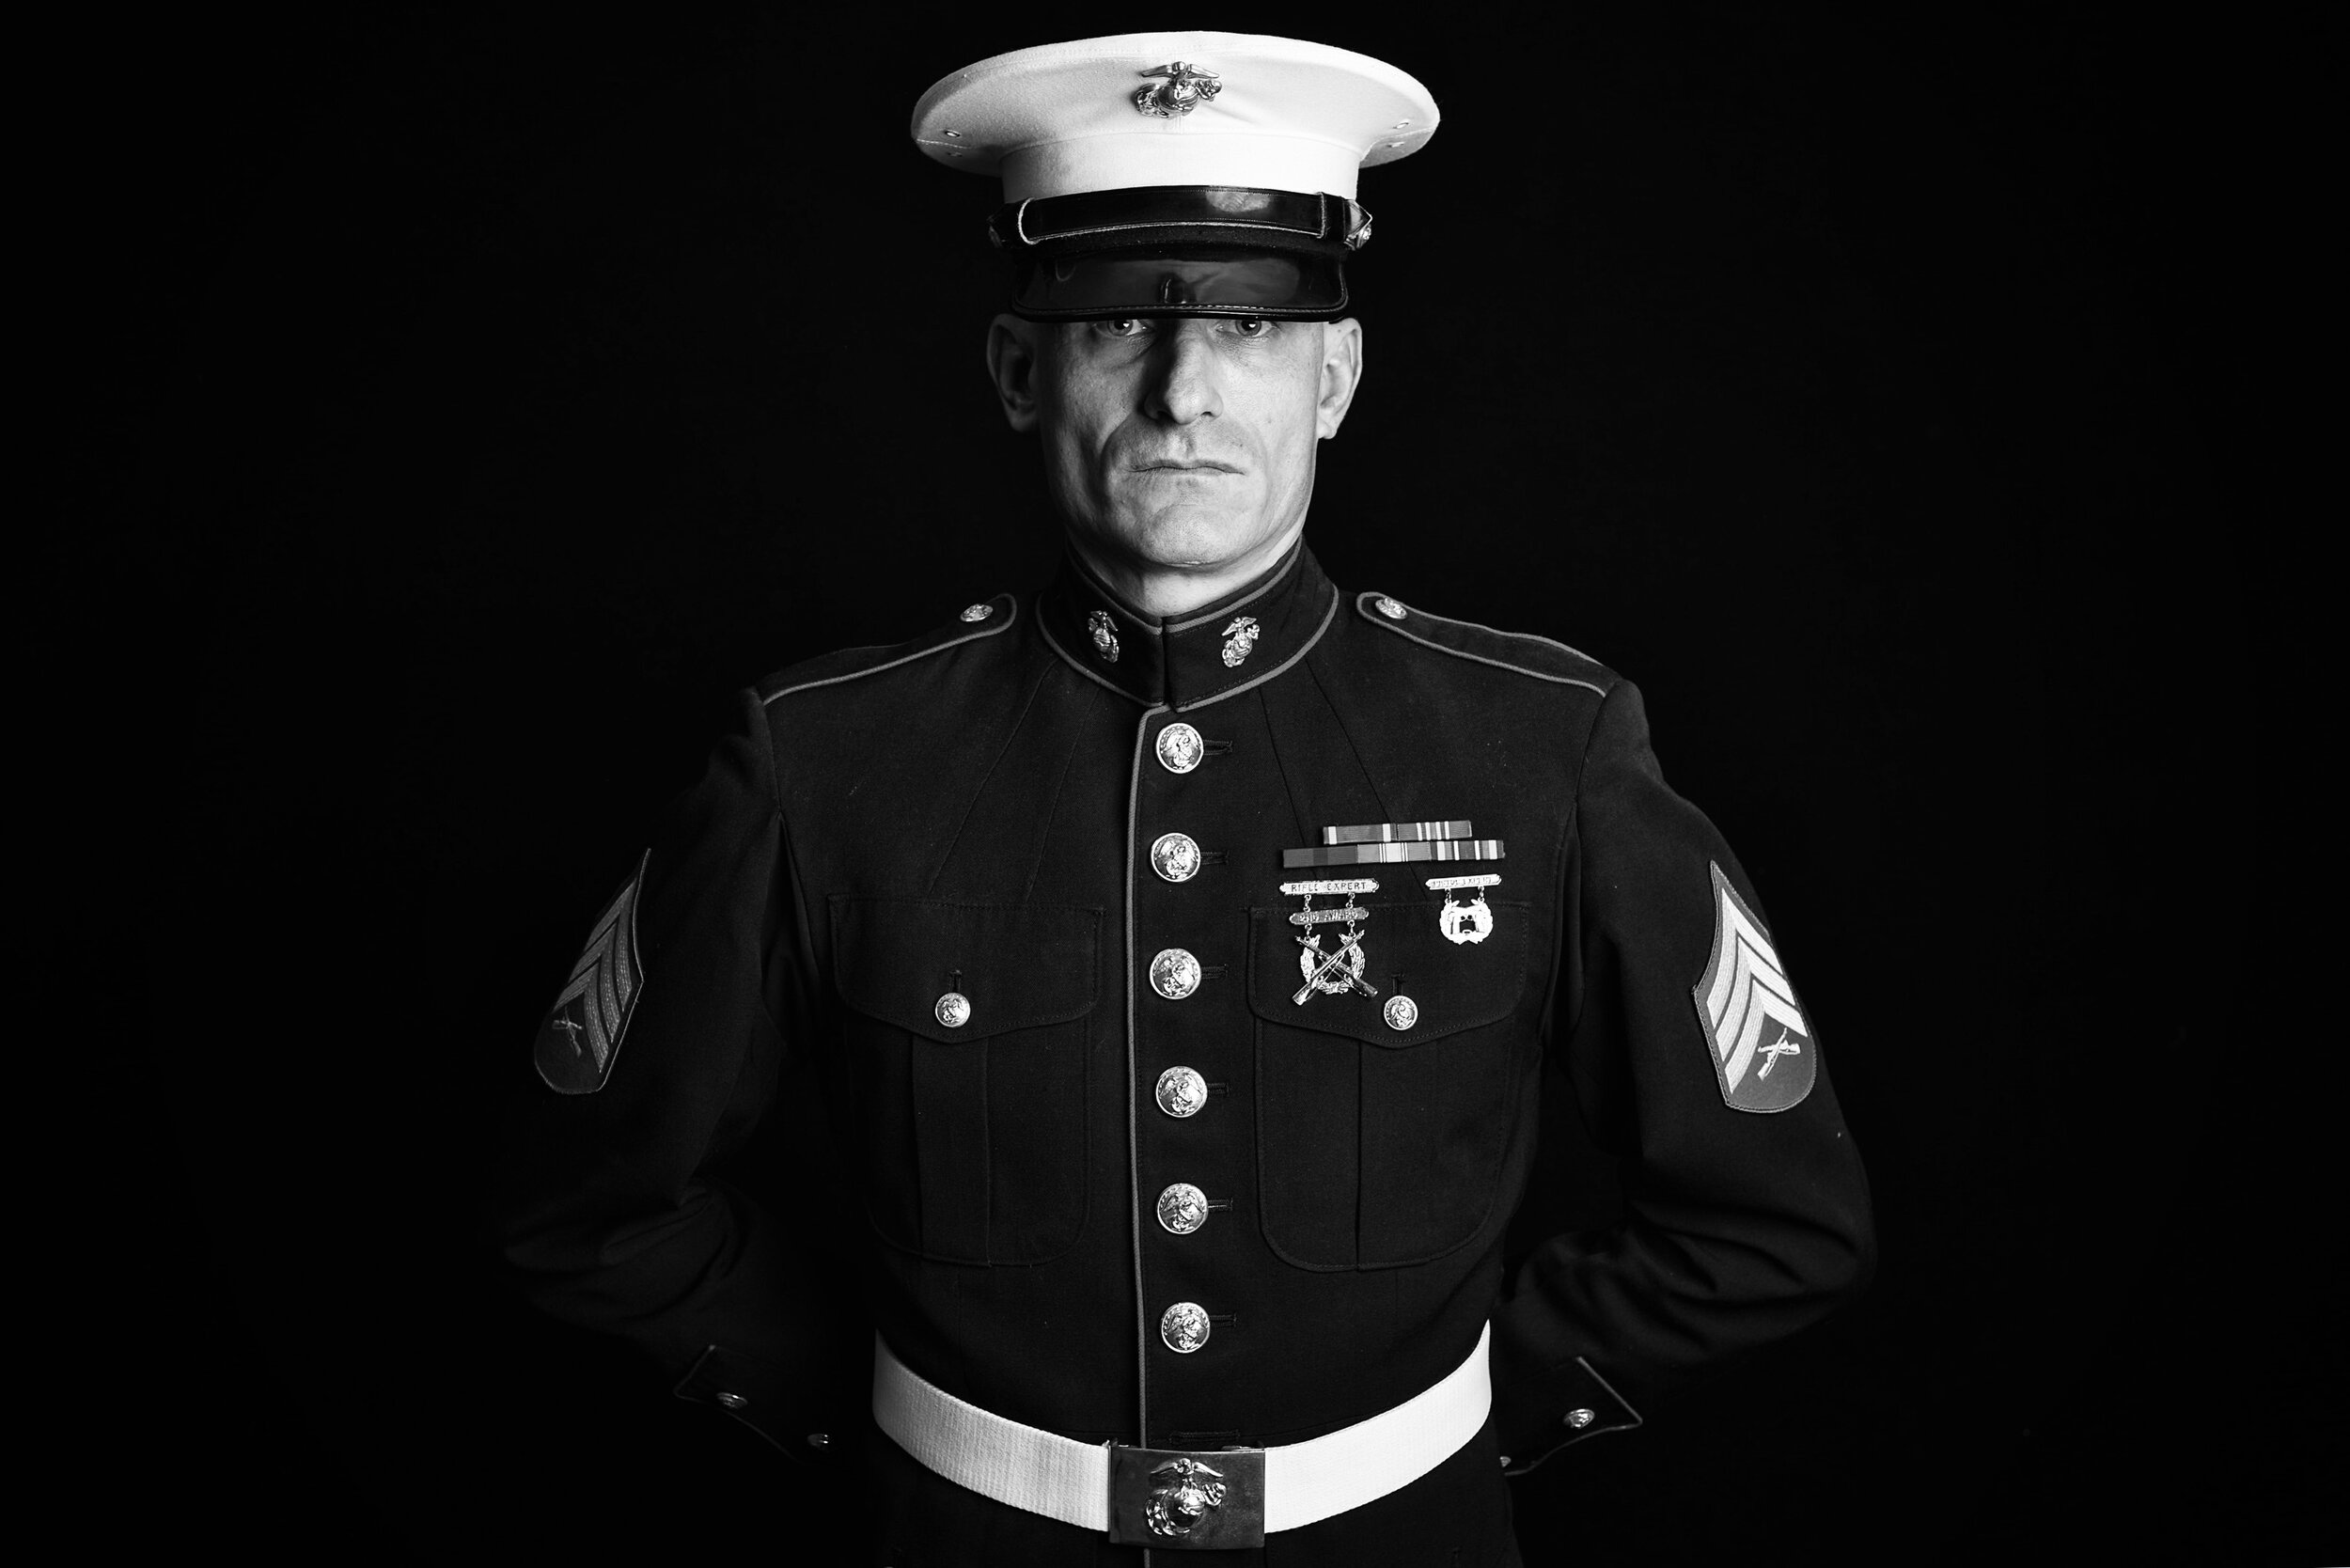 John Fronzoni, 40, Pringle, Pa. USMC, 2001-2005